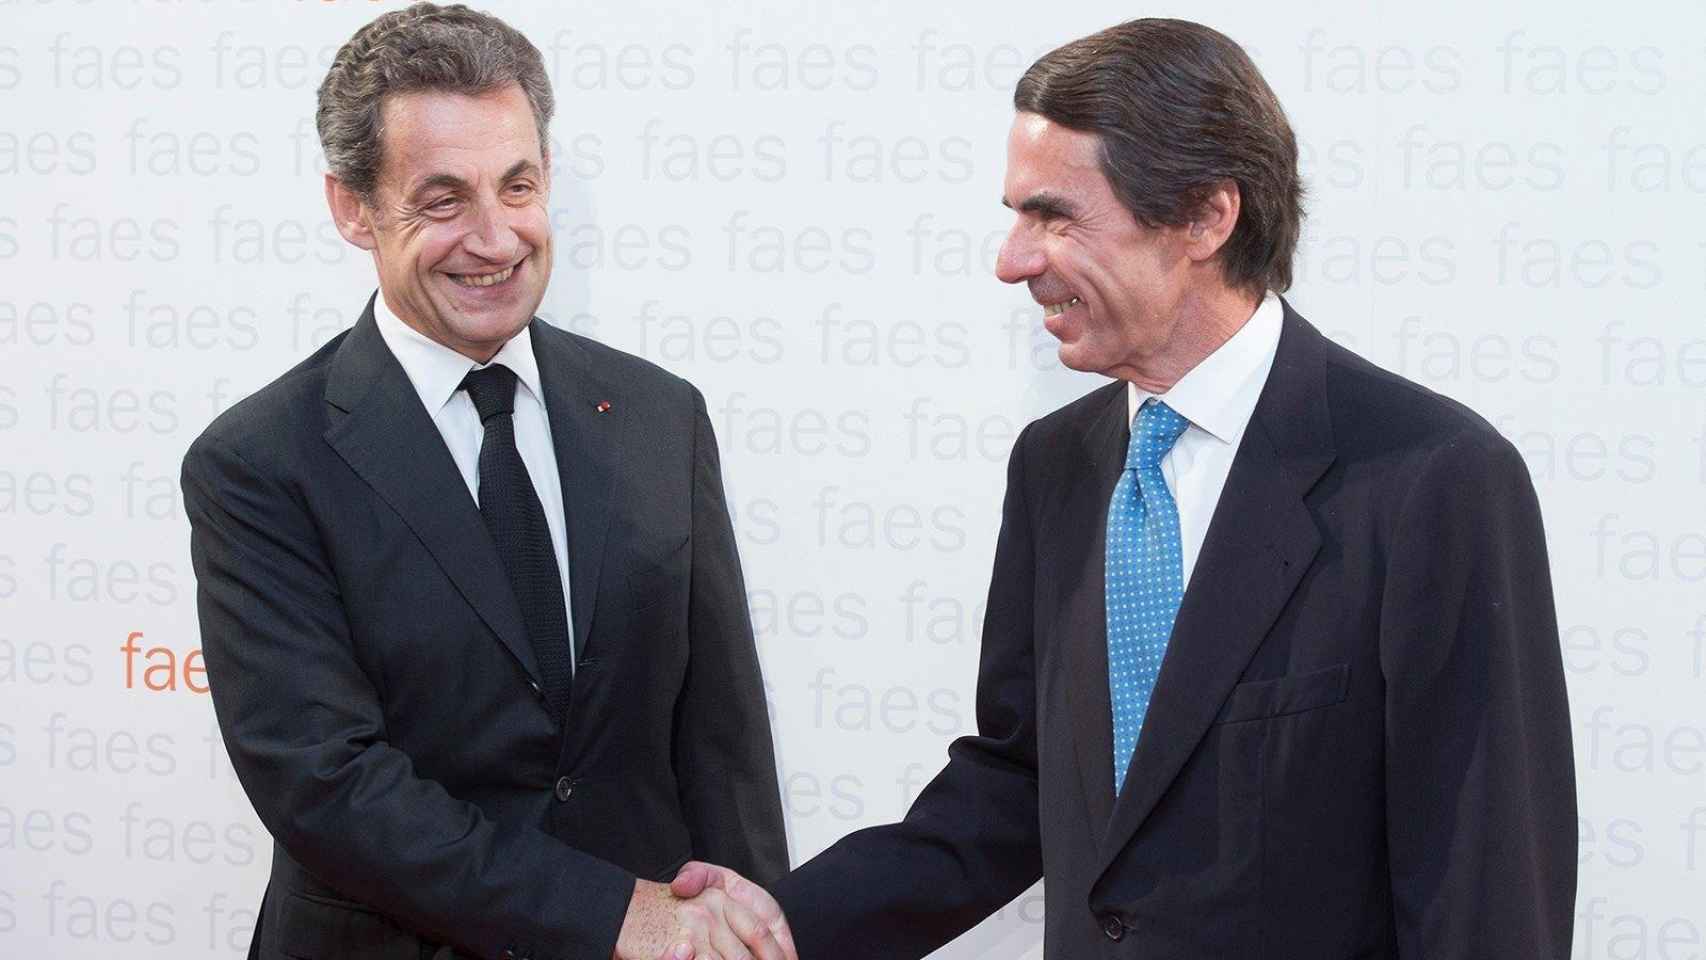 Nicolas Sarkozy y José María Aznar en la conferencia en la que ambos han participado esta mañana / EUROPA PRESS